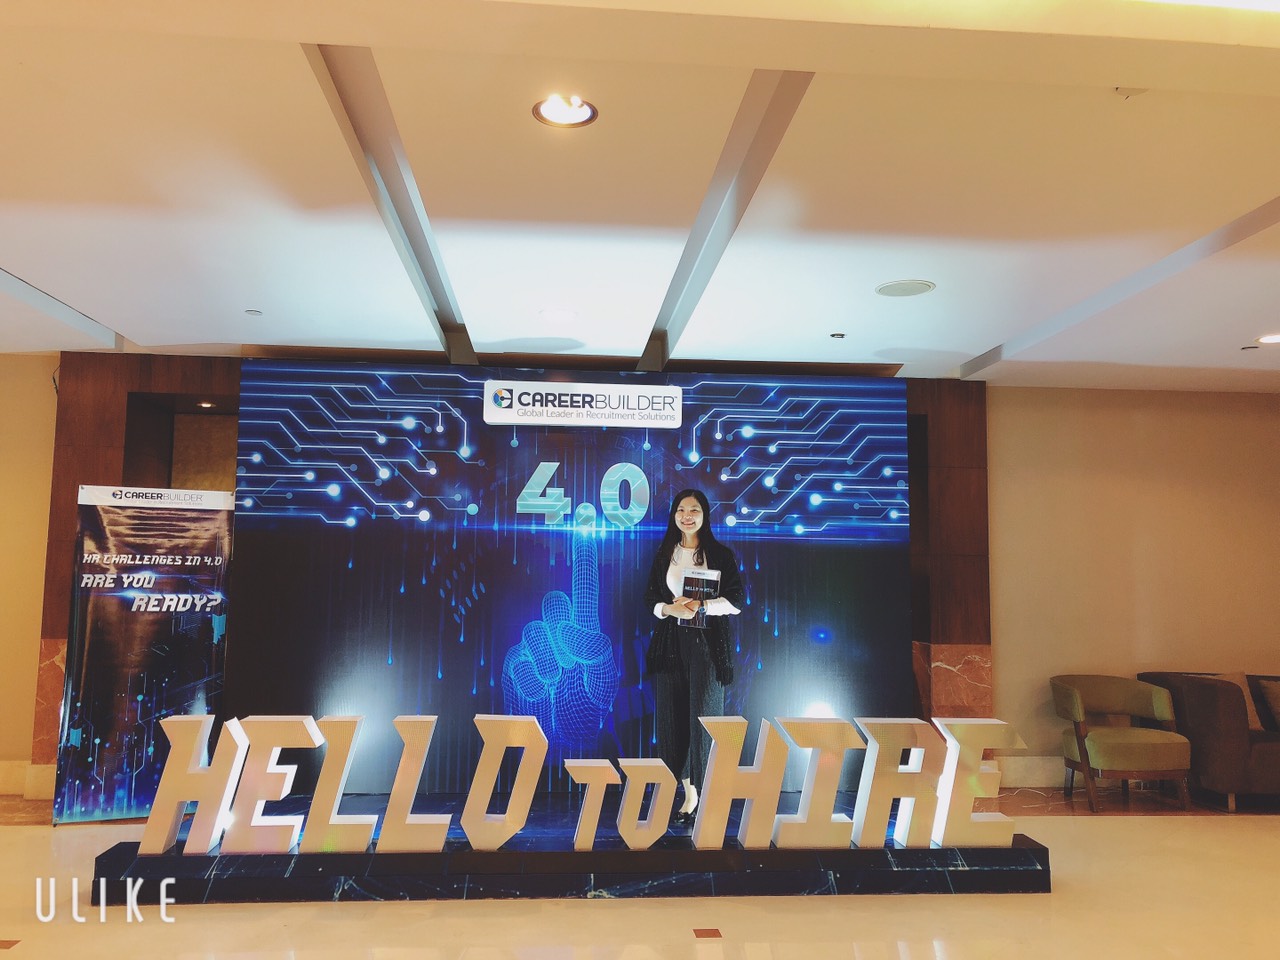 HVT Invecon tham dự Hội thảo Quốc tế “Hello to hire 4.0”: Những ảnh hưởng tích cực từ xu hướng nhân sự mới nhất và cách đổi mới công nghệ đến chiến lược tuyển dụng 2019